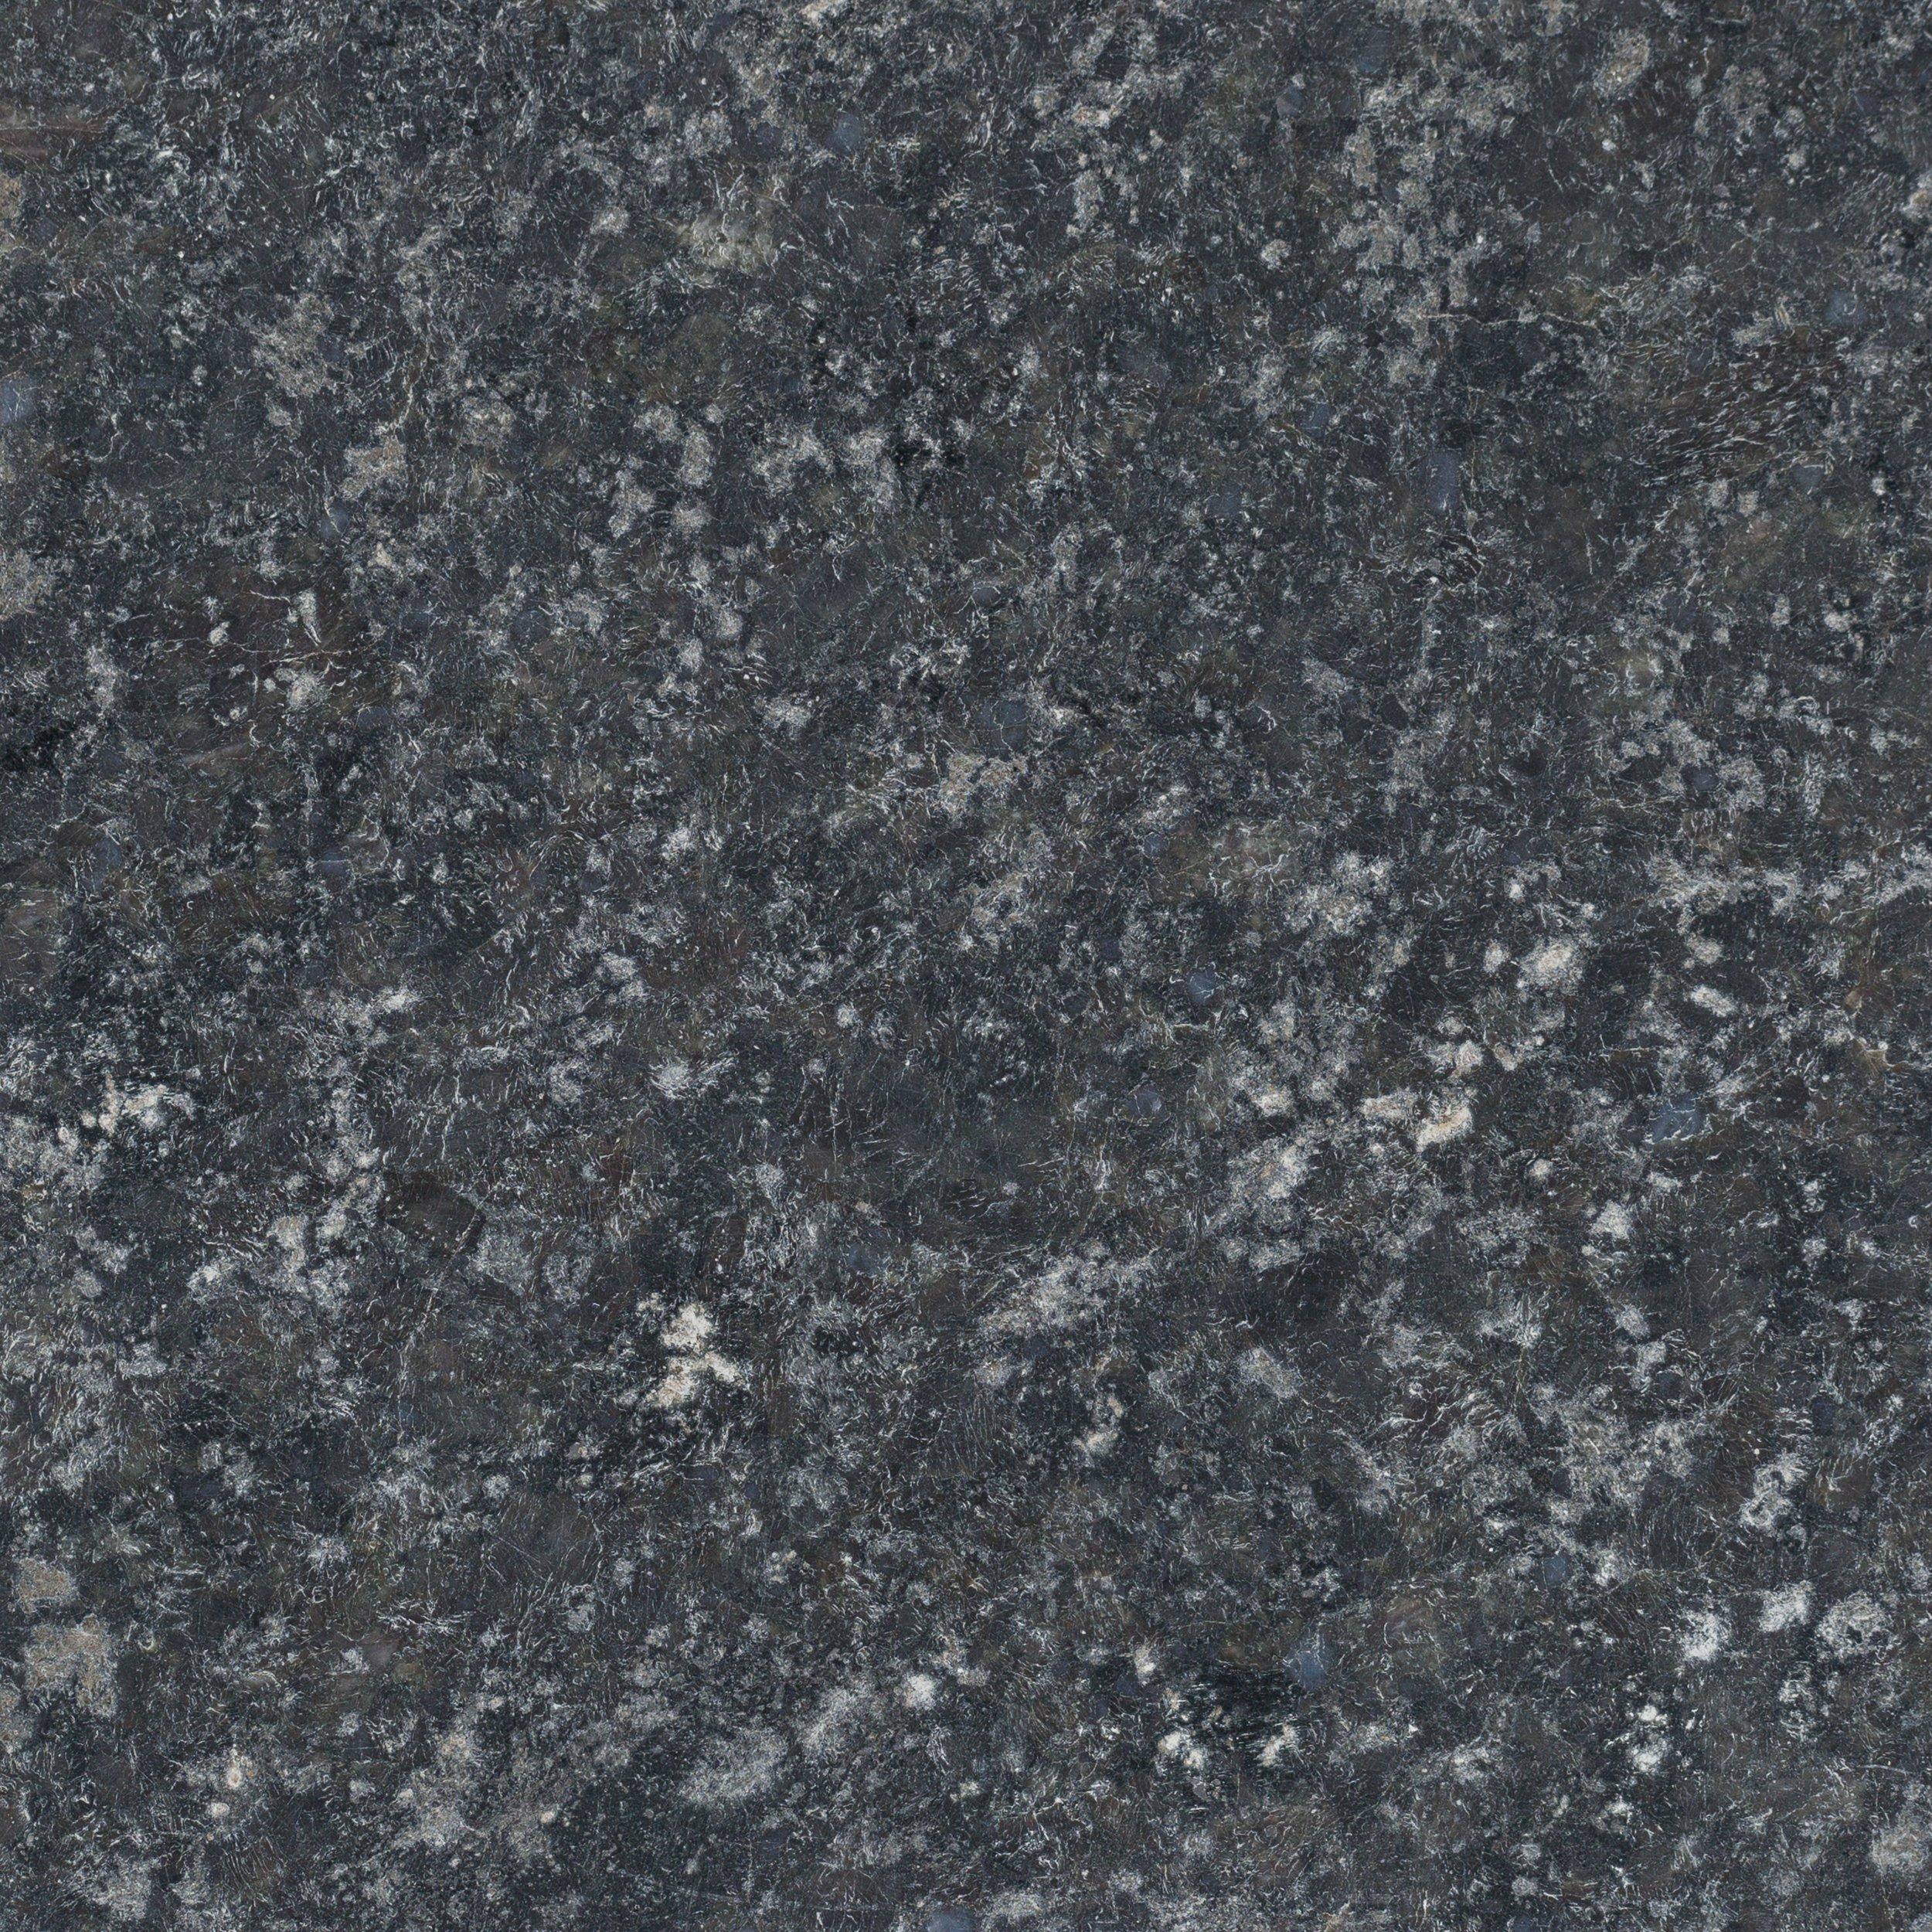 Sample Custom Countertop Black Pearl Brushed Granite 4 X 4